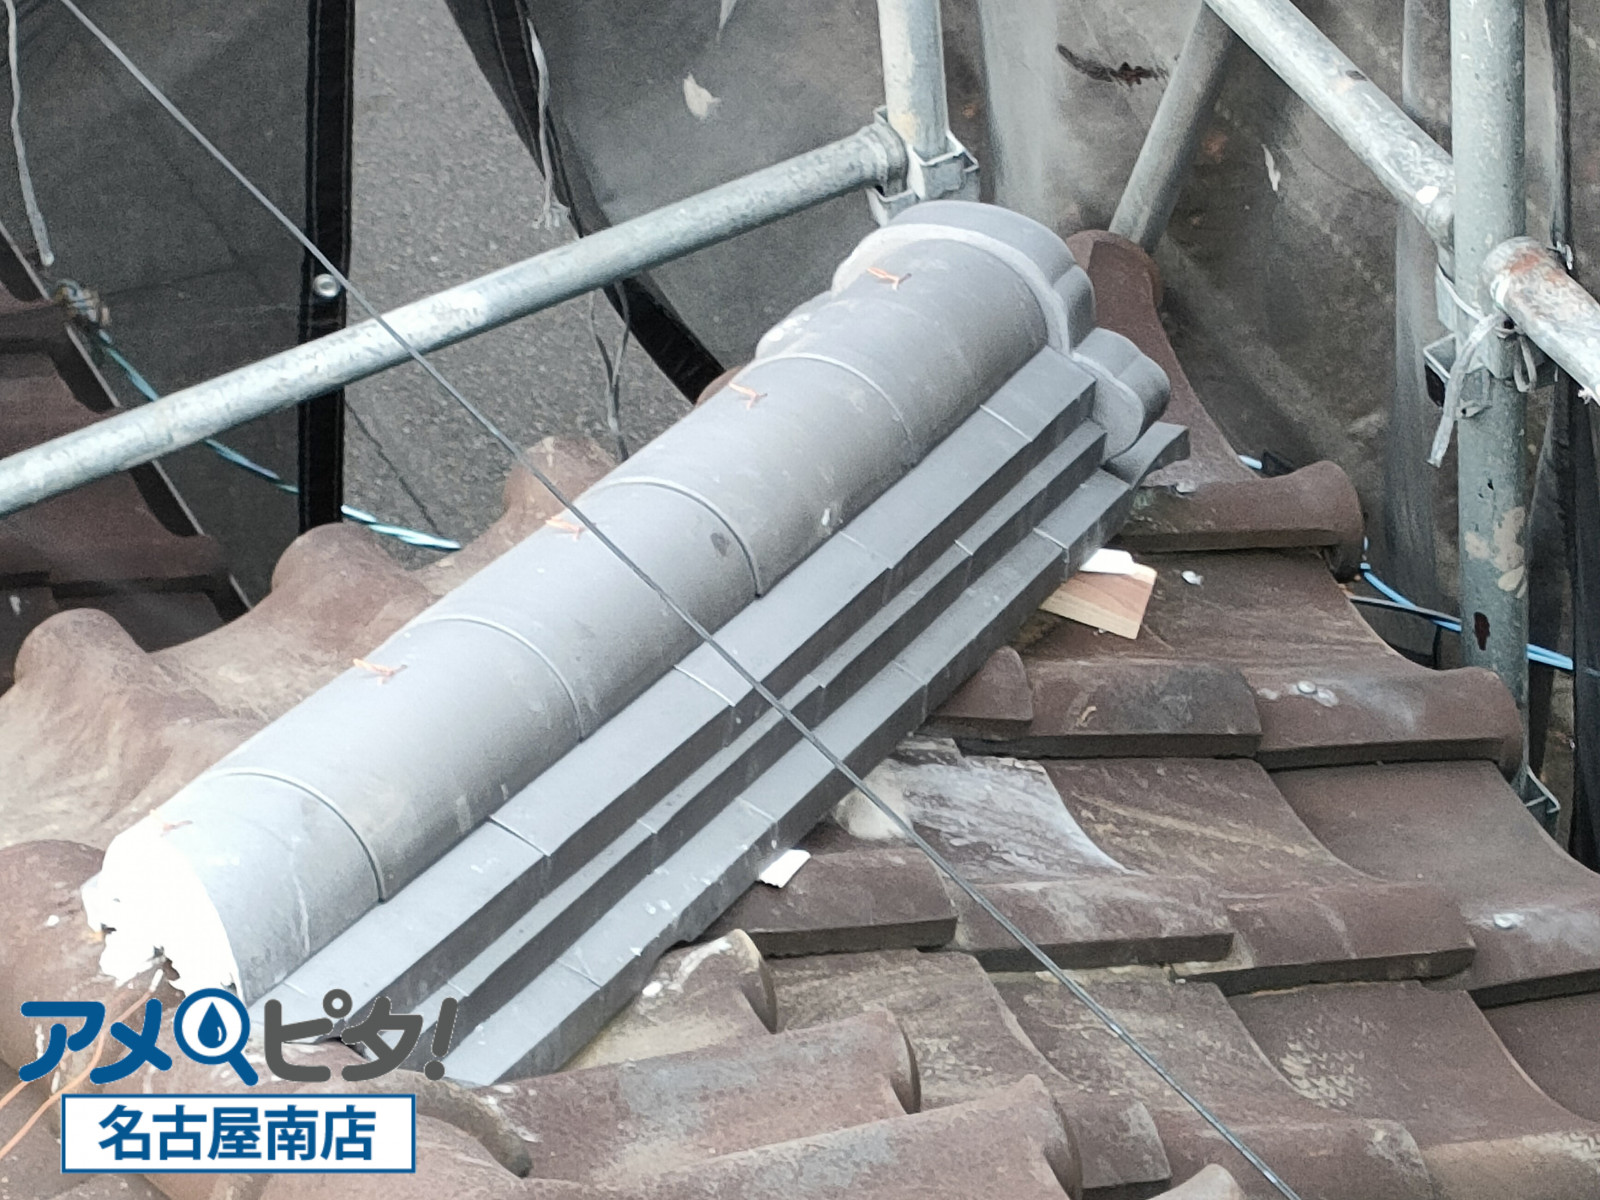 名古屋市南区にて和風の屋根瓦で学ぶ入母屋屋根の隅棟部での施工方法